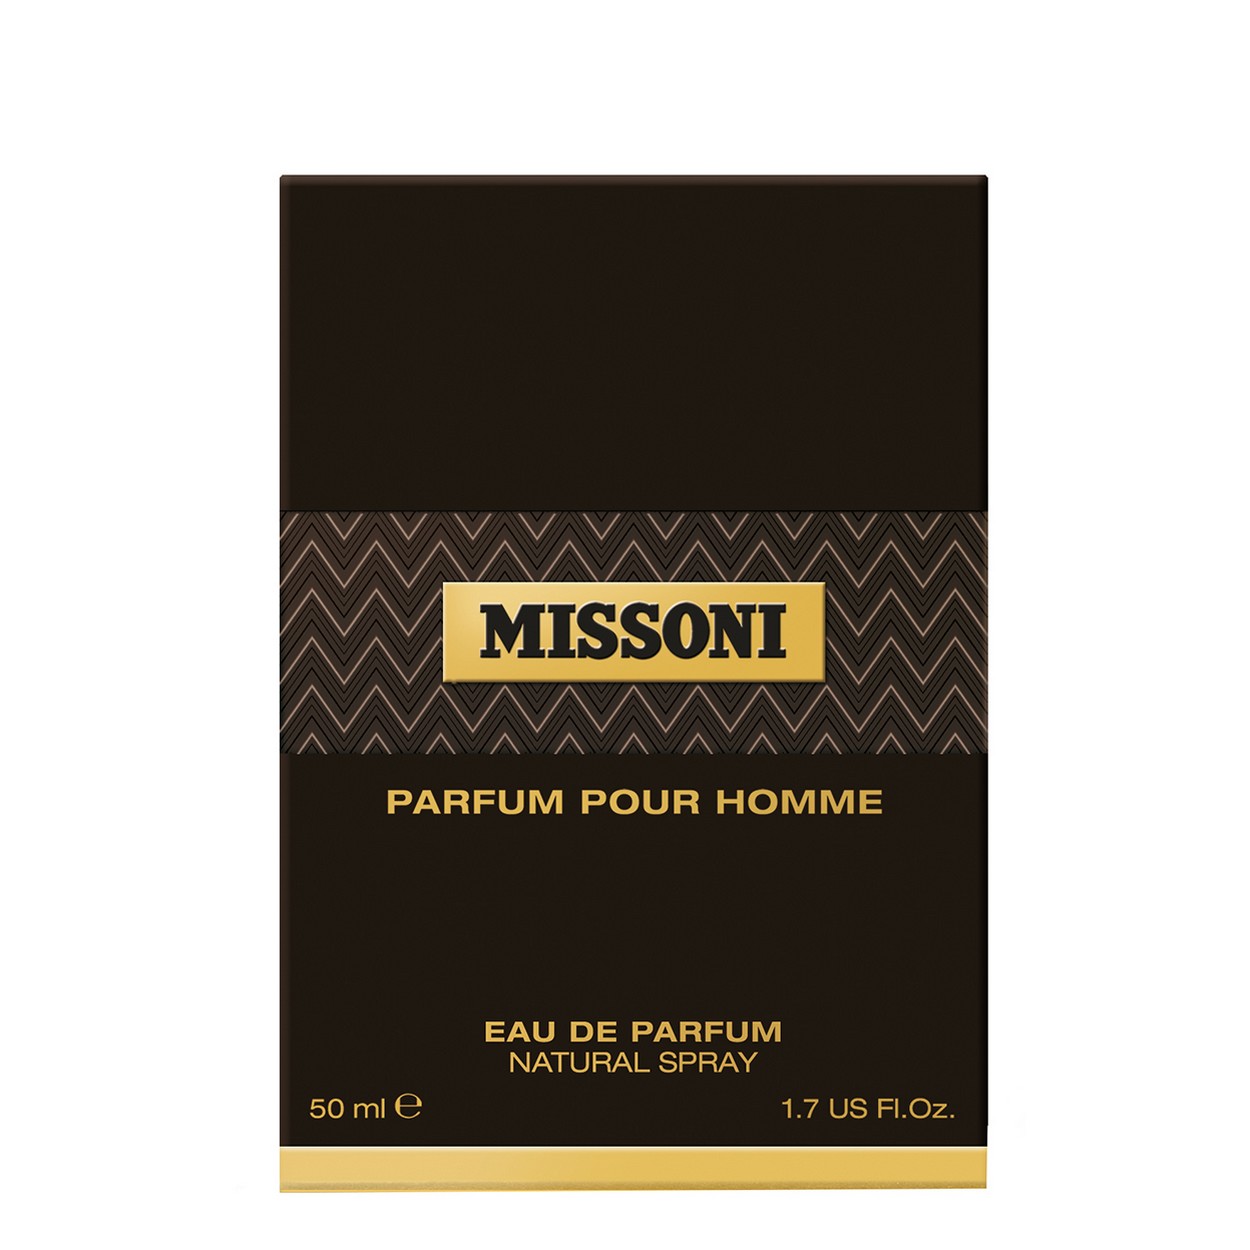 Missoni Parfum Pour Homme Eau de Parfum 50ml